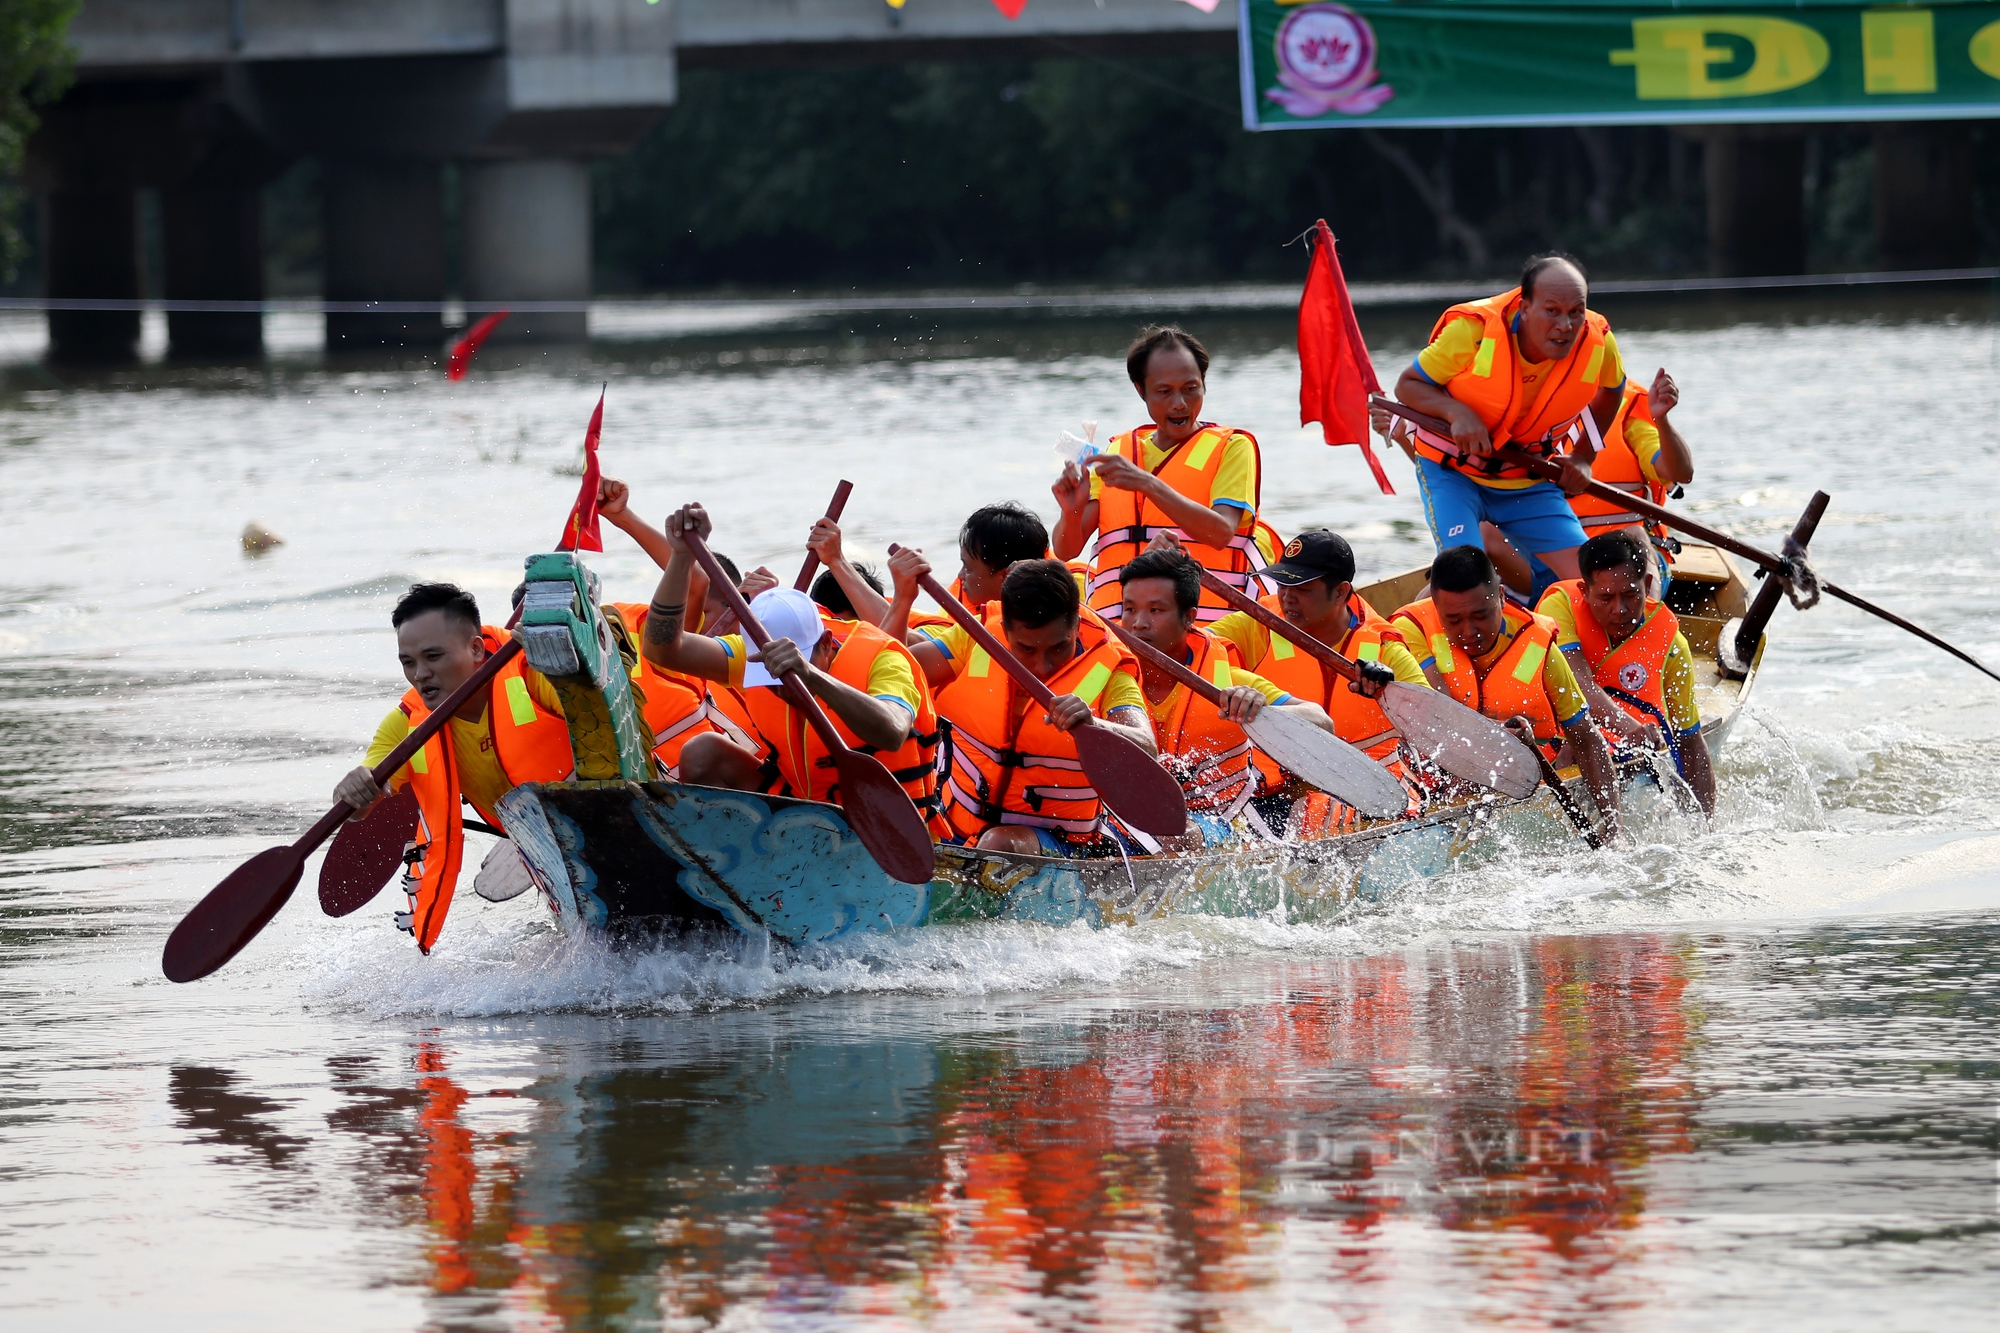 Hà Tĩnh: Sôi động lễ hội đua thuyền truyền thống trên sông Rào Cái trong ngày Tết Độc lập - Ảnh 14.